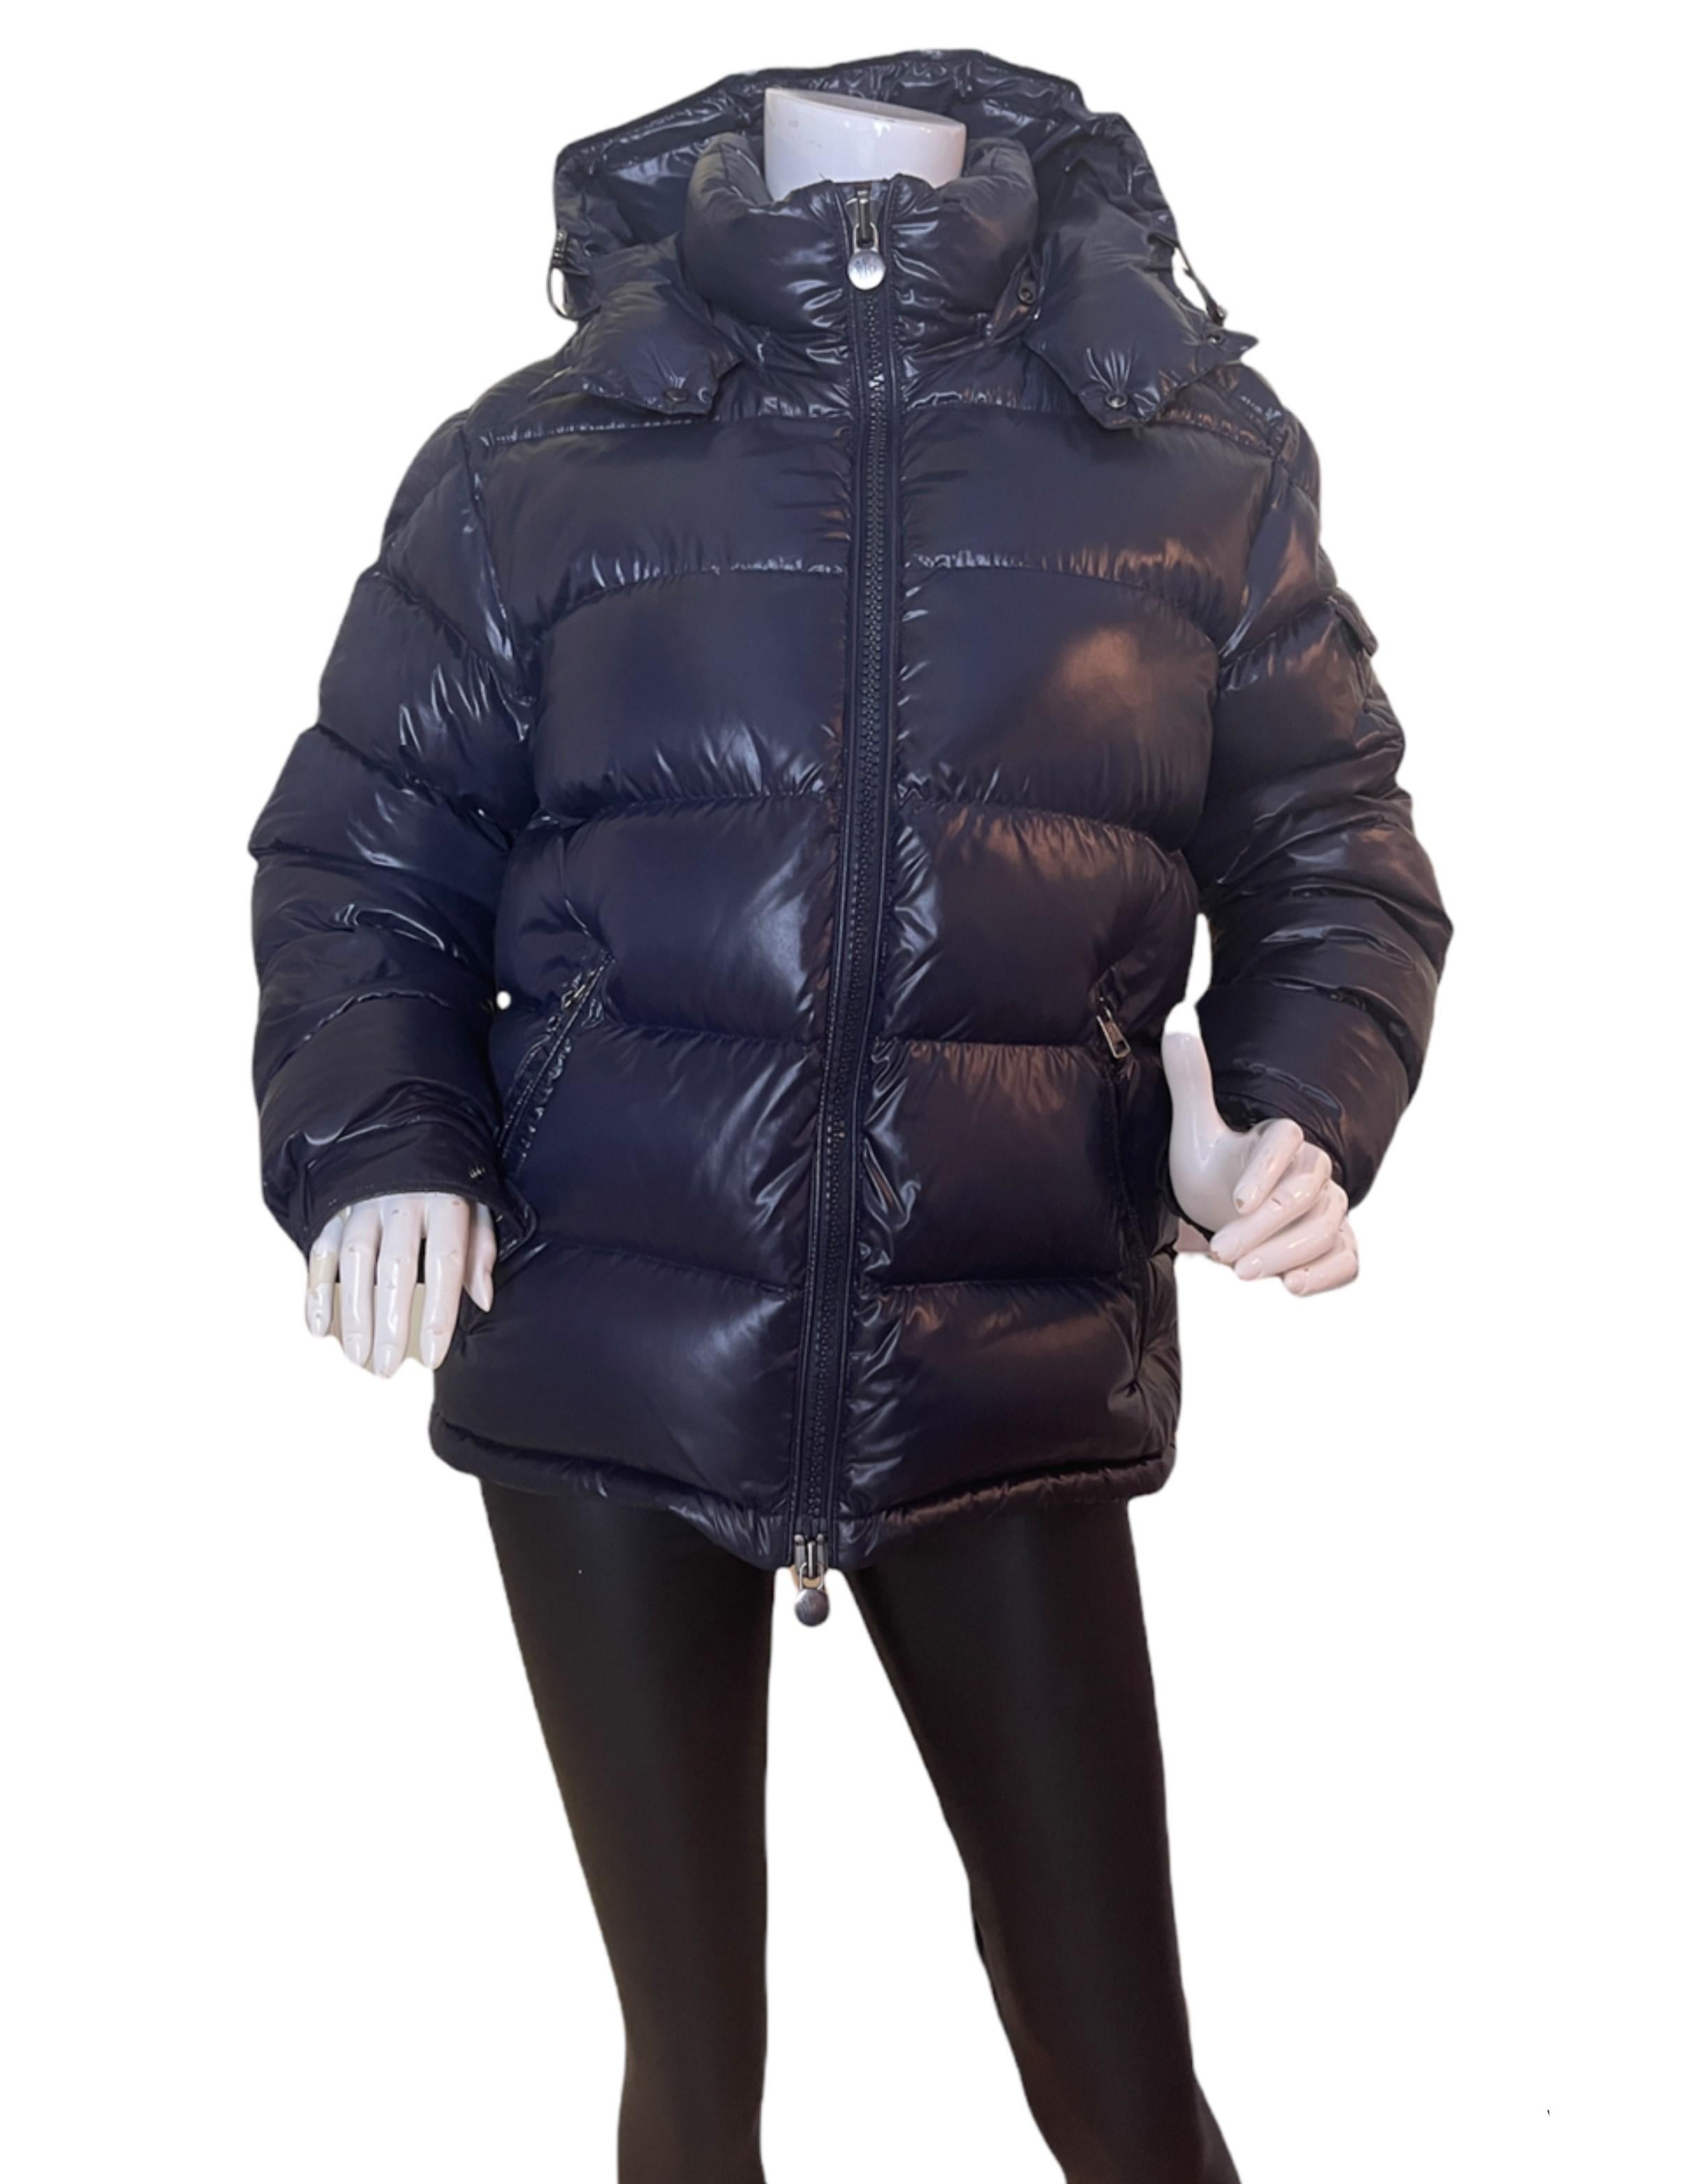 moncler puffer jacket mens sale Off 63% - www.loverethymno.com